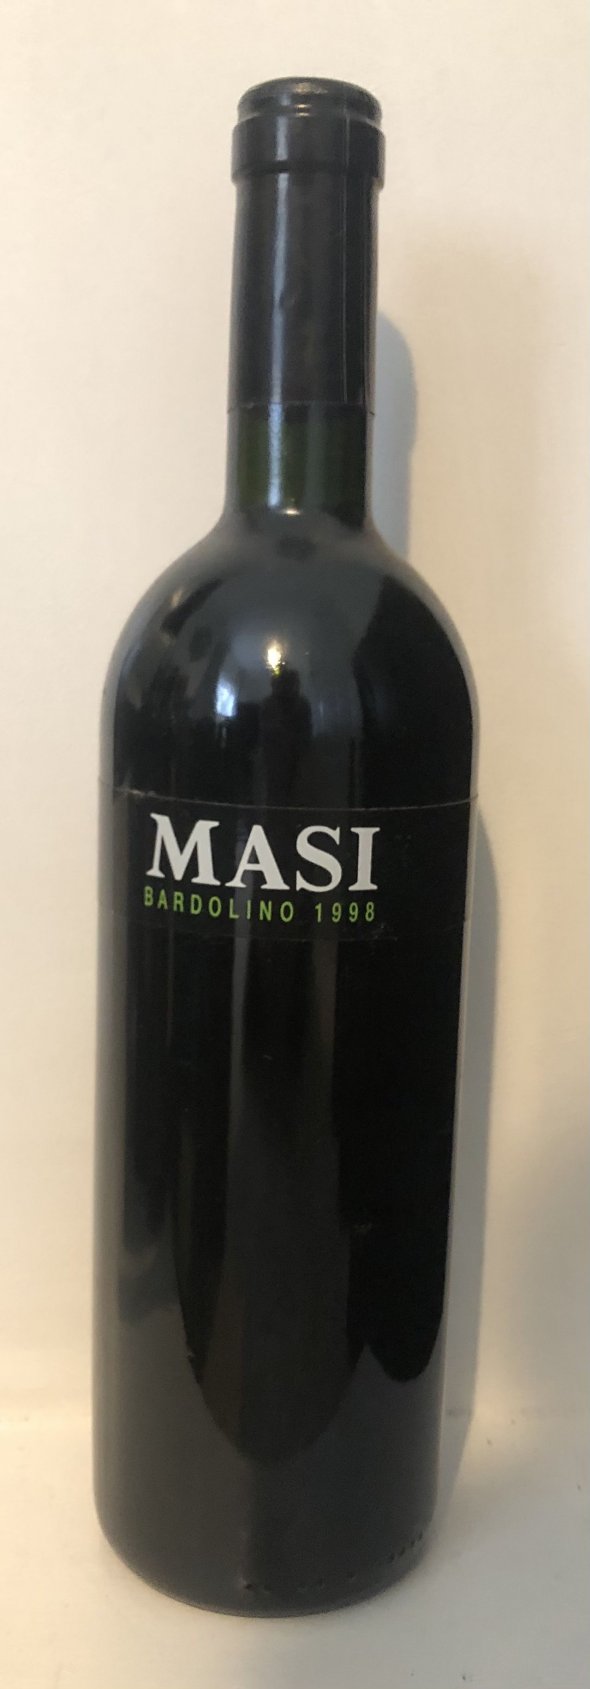 Masi, Bardolino, 1998